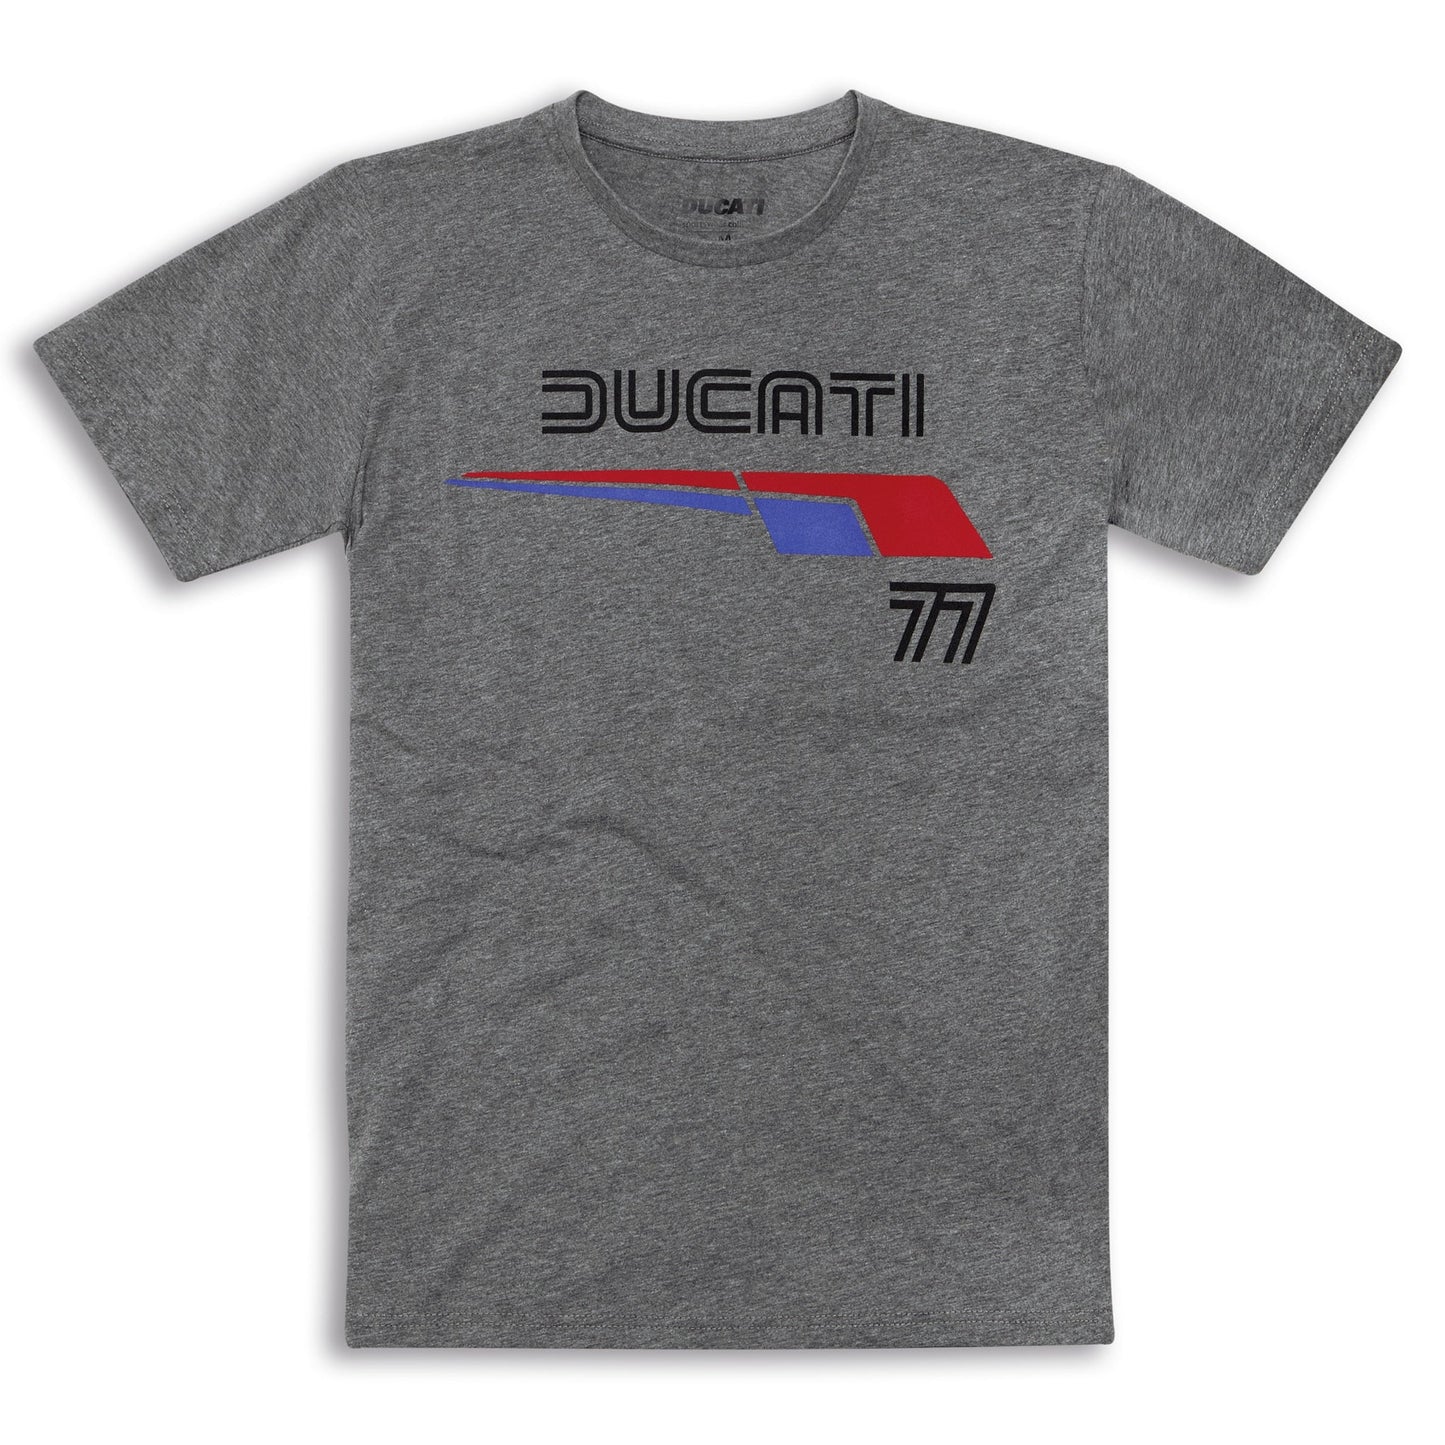 Ducati 77 T-Shirt